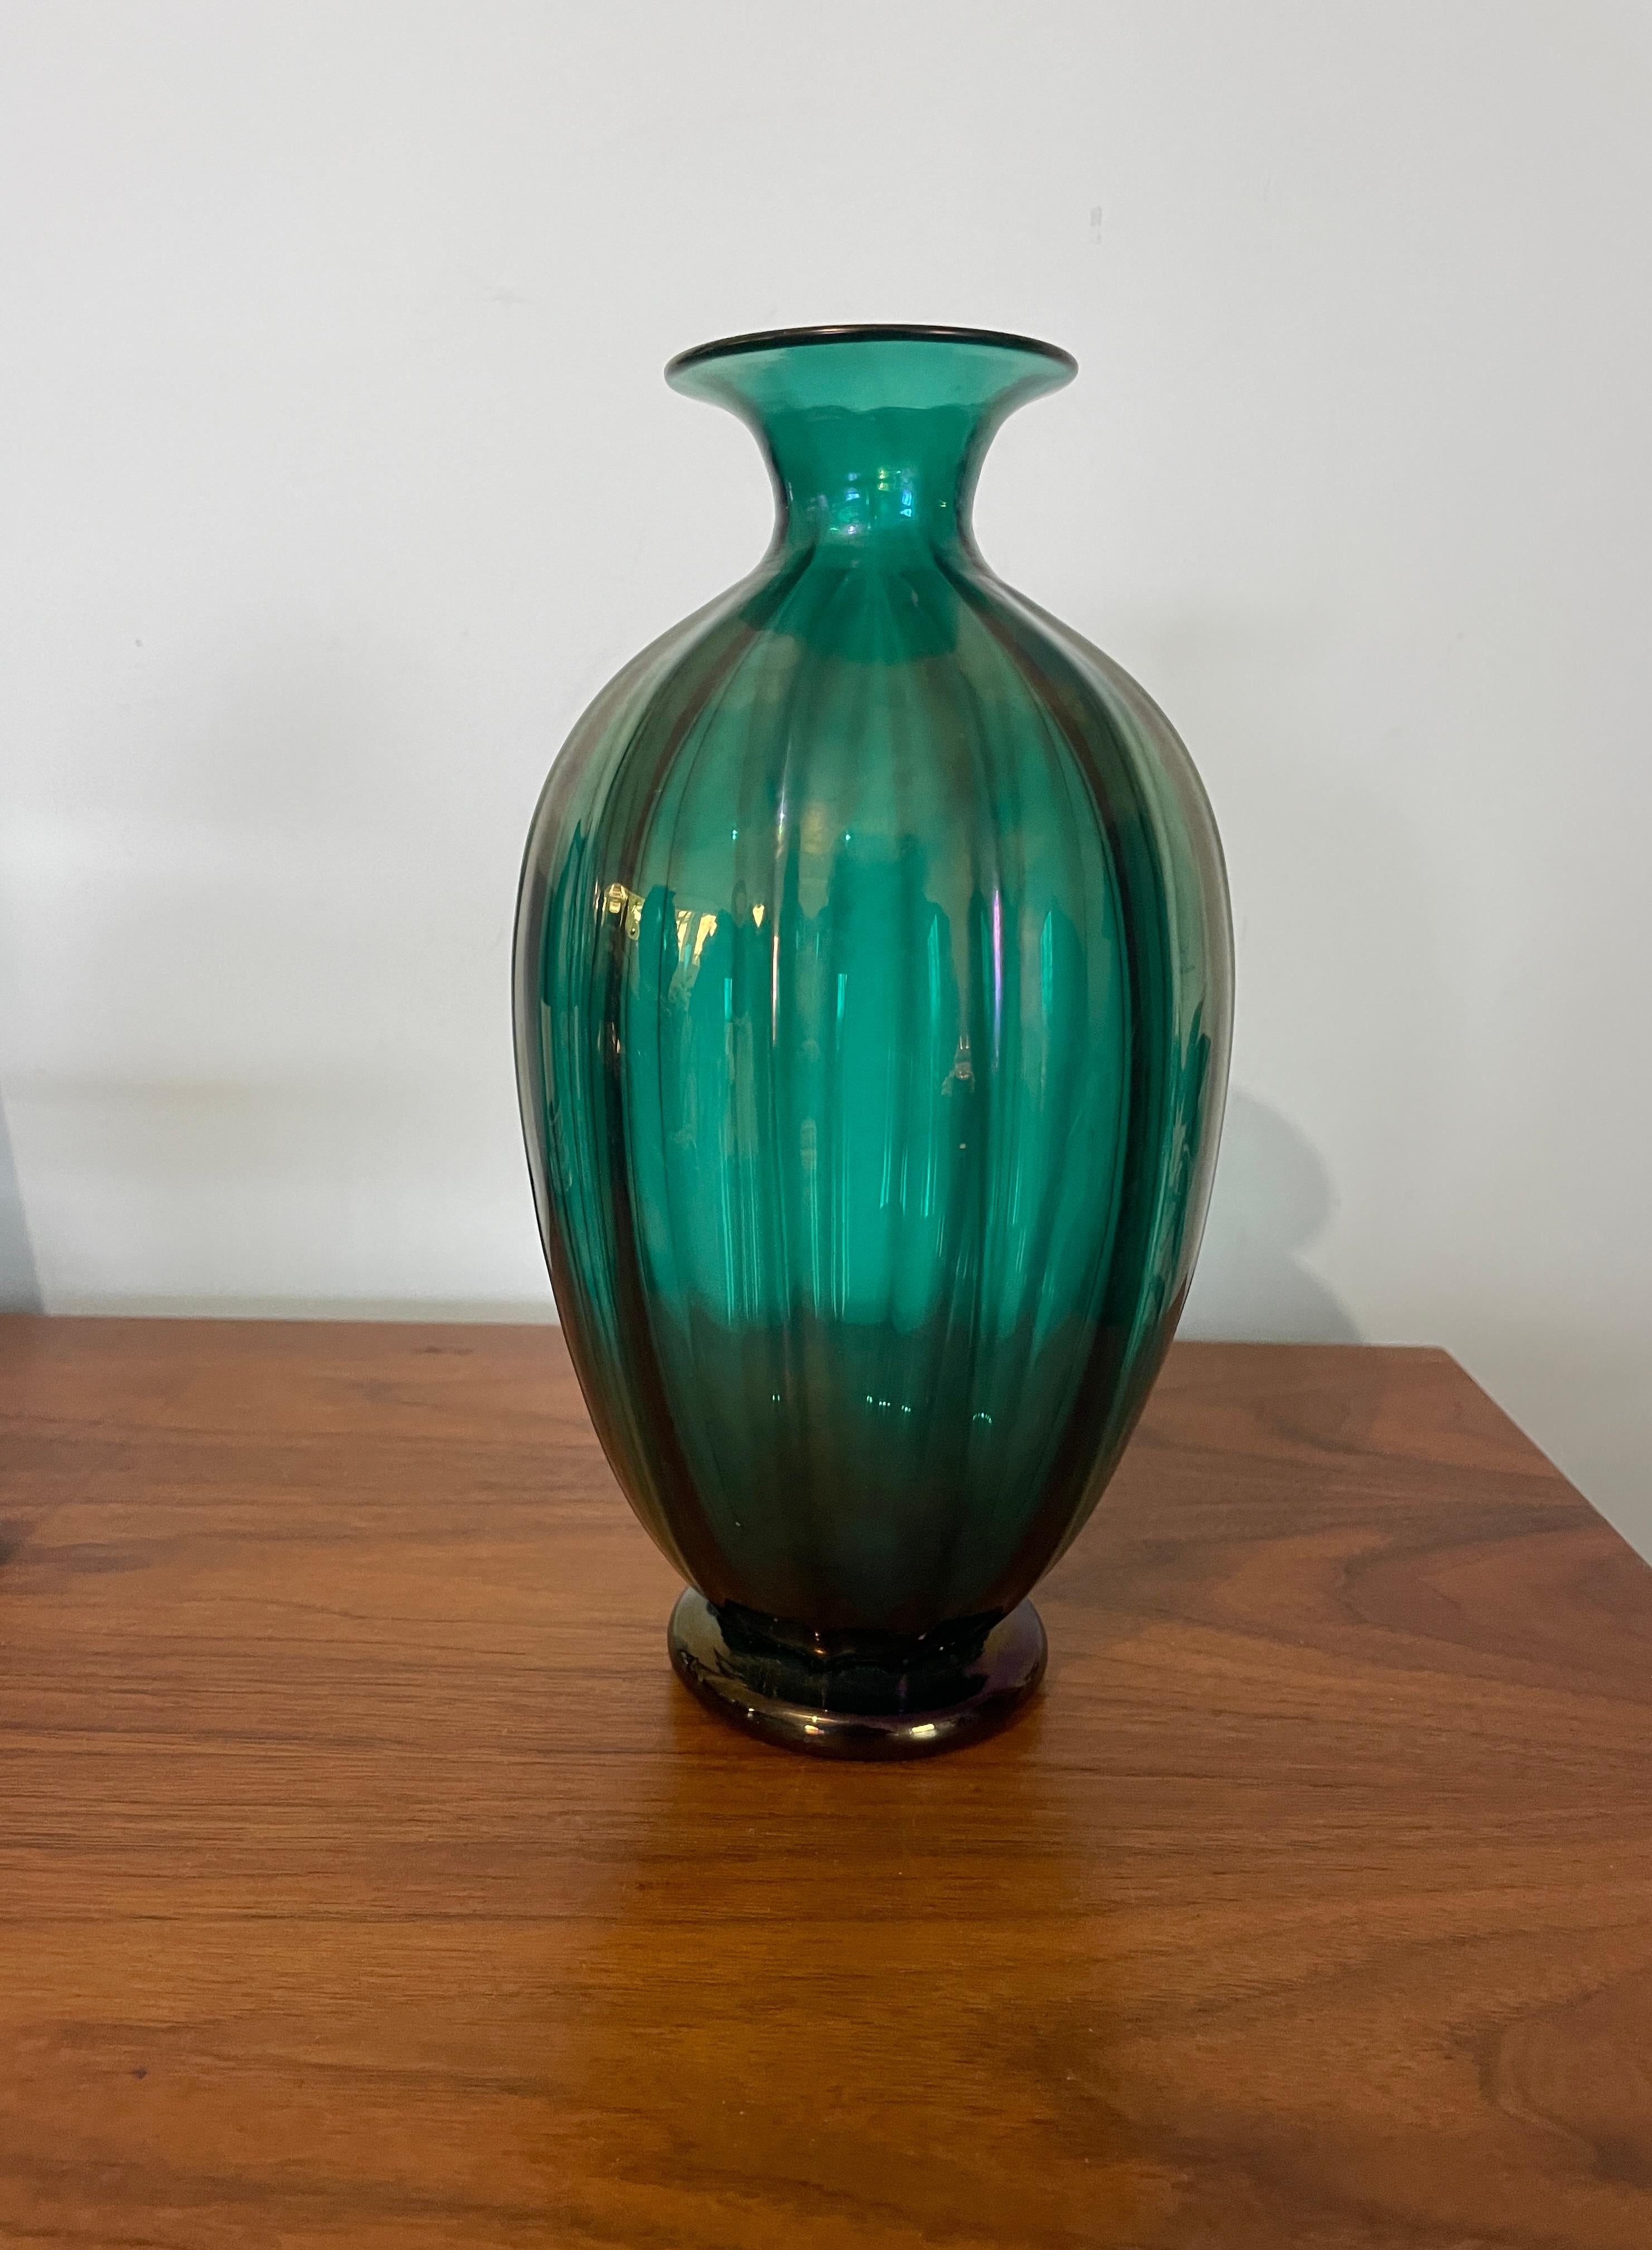 Diese wunderschöne Vase von Archimede Seguso mit ihrem gerippten Schimmer in einem atemberaubenden Grünton ist eine perfekte Ergänzung für jede Sammlung von Dekorationsartikeln. Die Vase wurde mit großer Sorgfalt und Liebe zum Detail gefertigt und